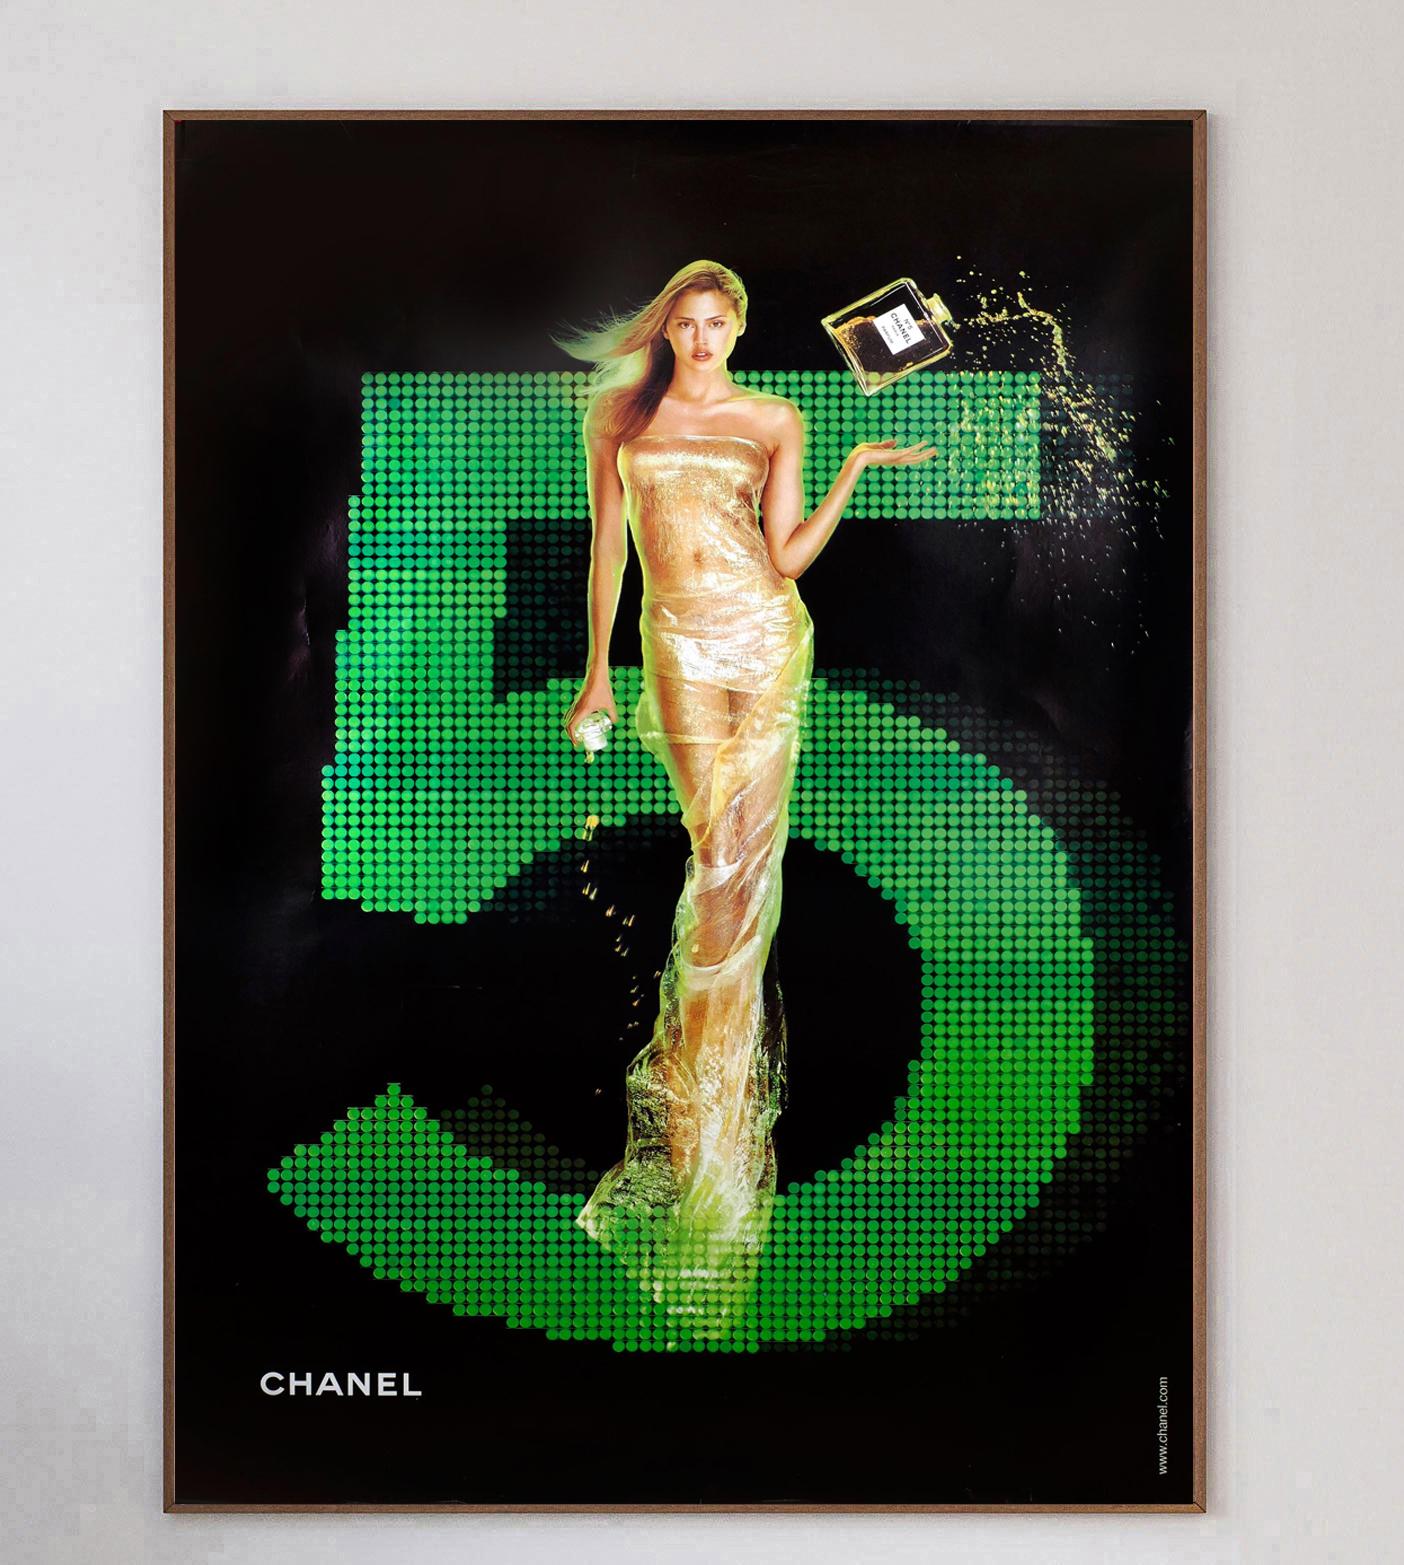 Übergroßes Plakat, das für den kultigen Duft Chanel No.5 wirbt. Der Duft wurde erstmals 1921 veröffentlicht und ist bis heute einer der beliebtesten der Welt. Dieses atemberaubende Plakat zeigt das Model und die Schauspielerin Estella Warren und